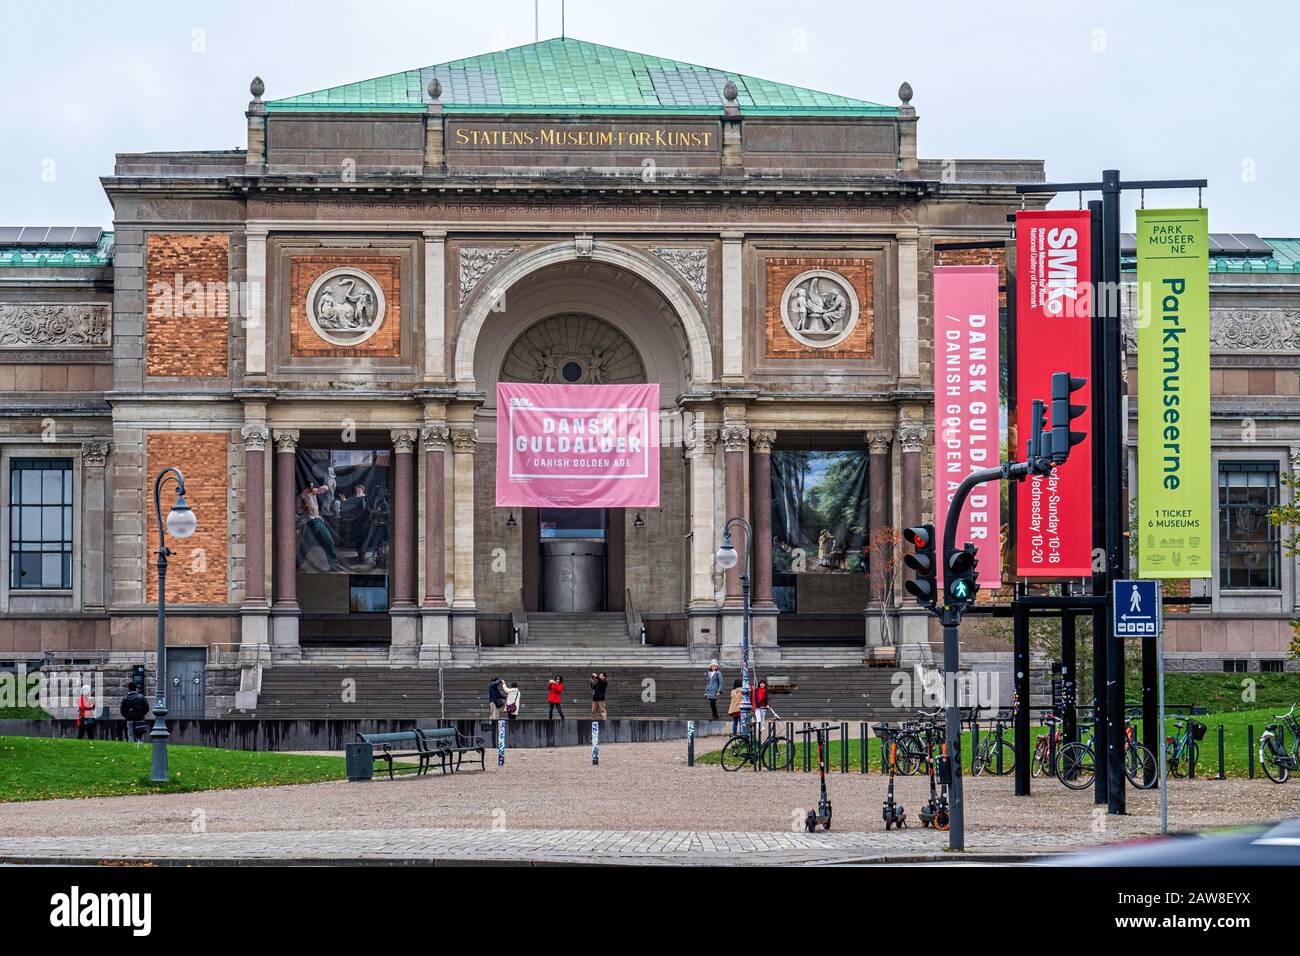 The National Gallery of Denmark, Statens Museum for Kunst, Italian Renaissance revival style building built 1889-96, Sølvgade 48, Copenhagen, Denmark Stock Photo